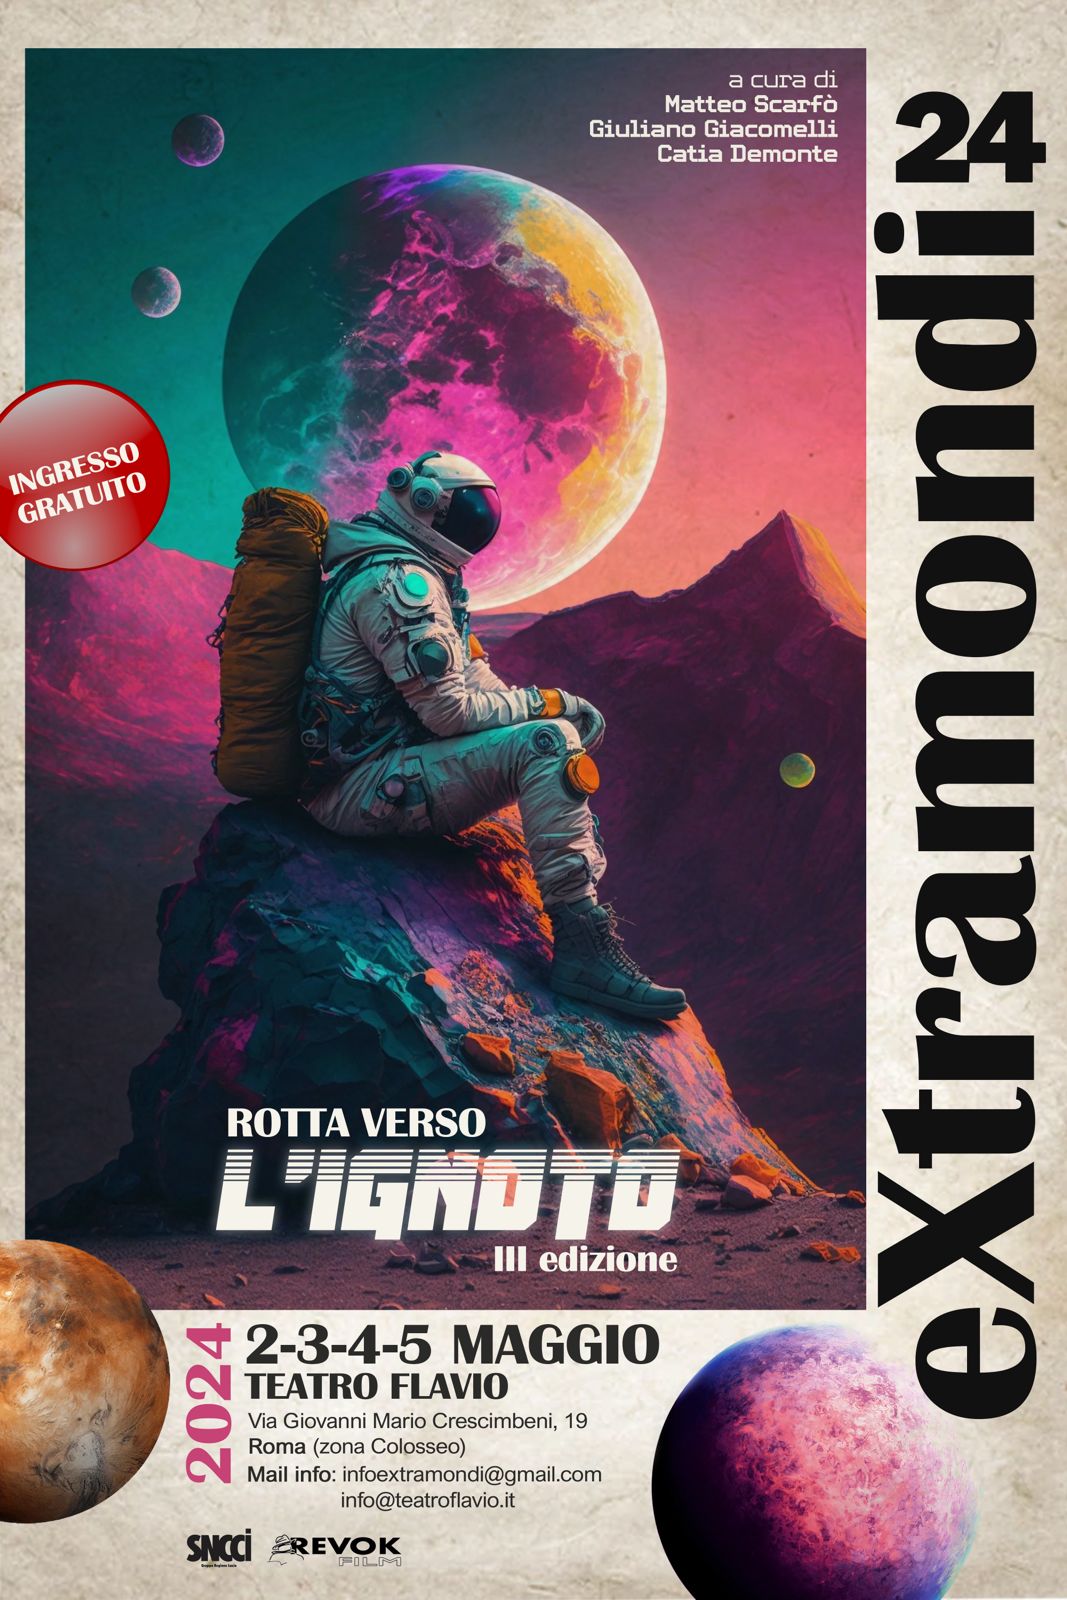 "Extramondi: nuovi territori del cinema fantastico italiano" dal 2 al 5 maggio al Teatro Flavio tra proiezioni e incontri